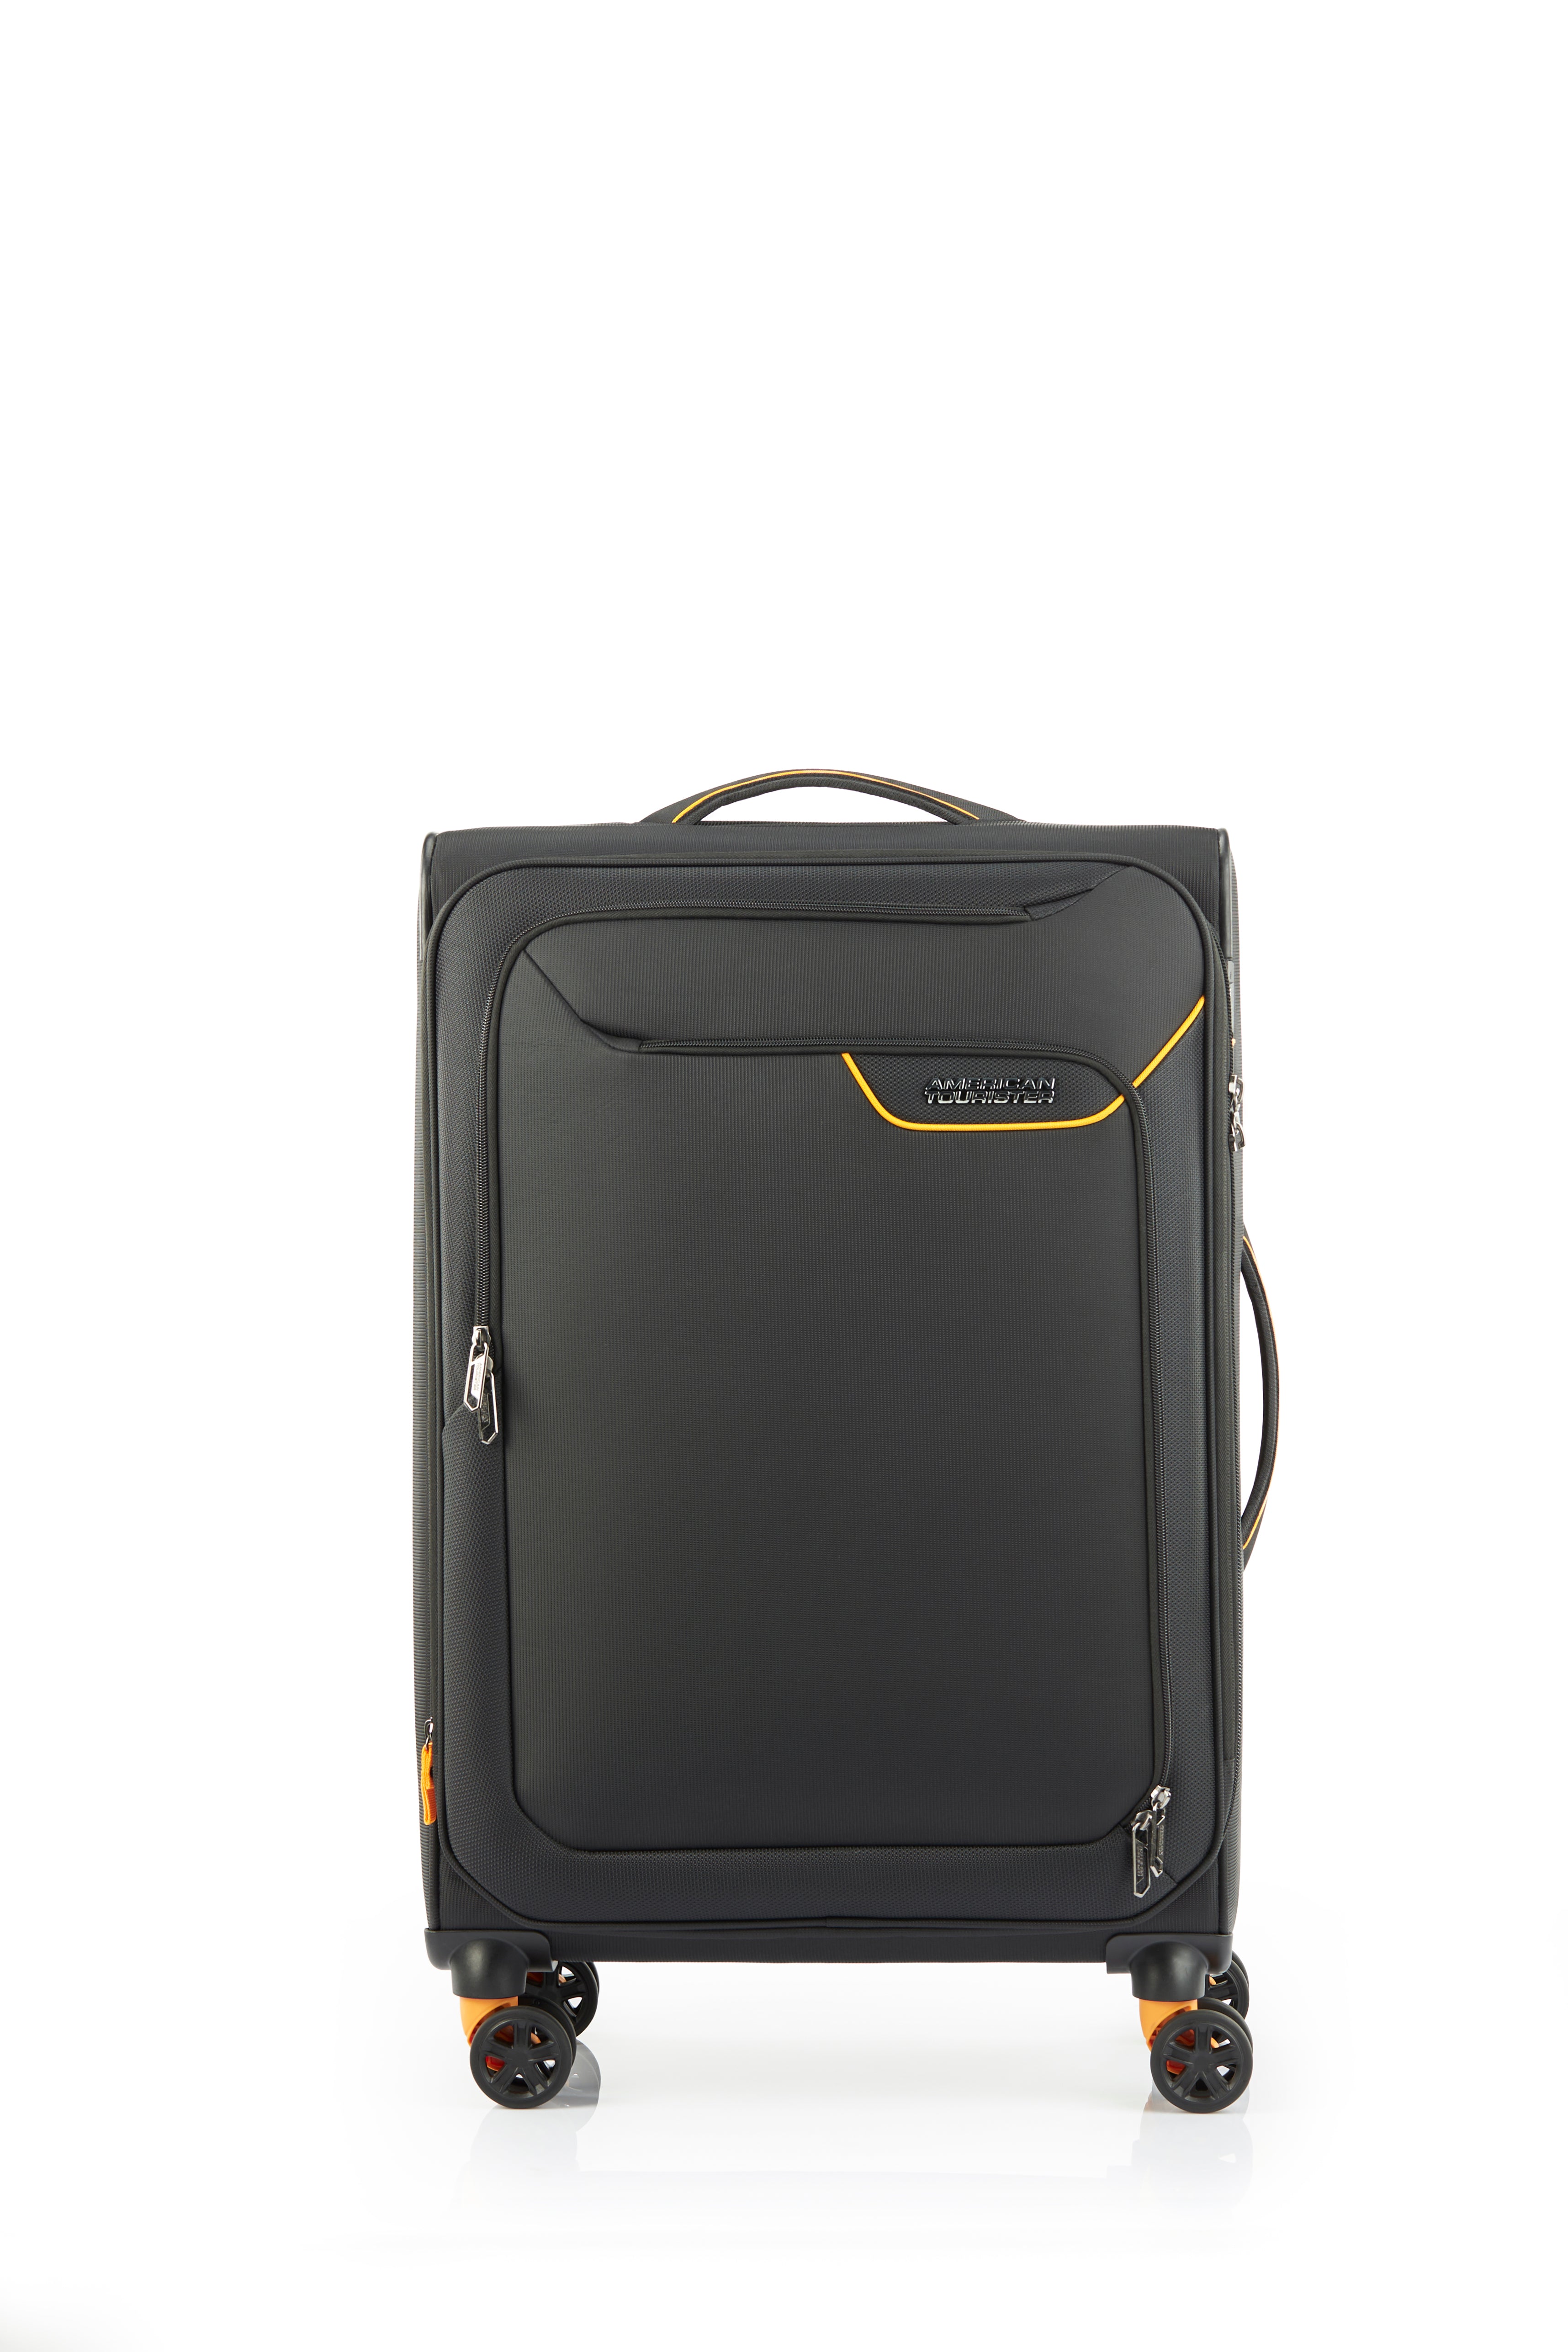 American Tourister - Applite ECO 71cm Medium Suitcase - Black/Must - 0